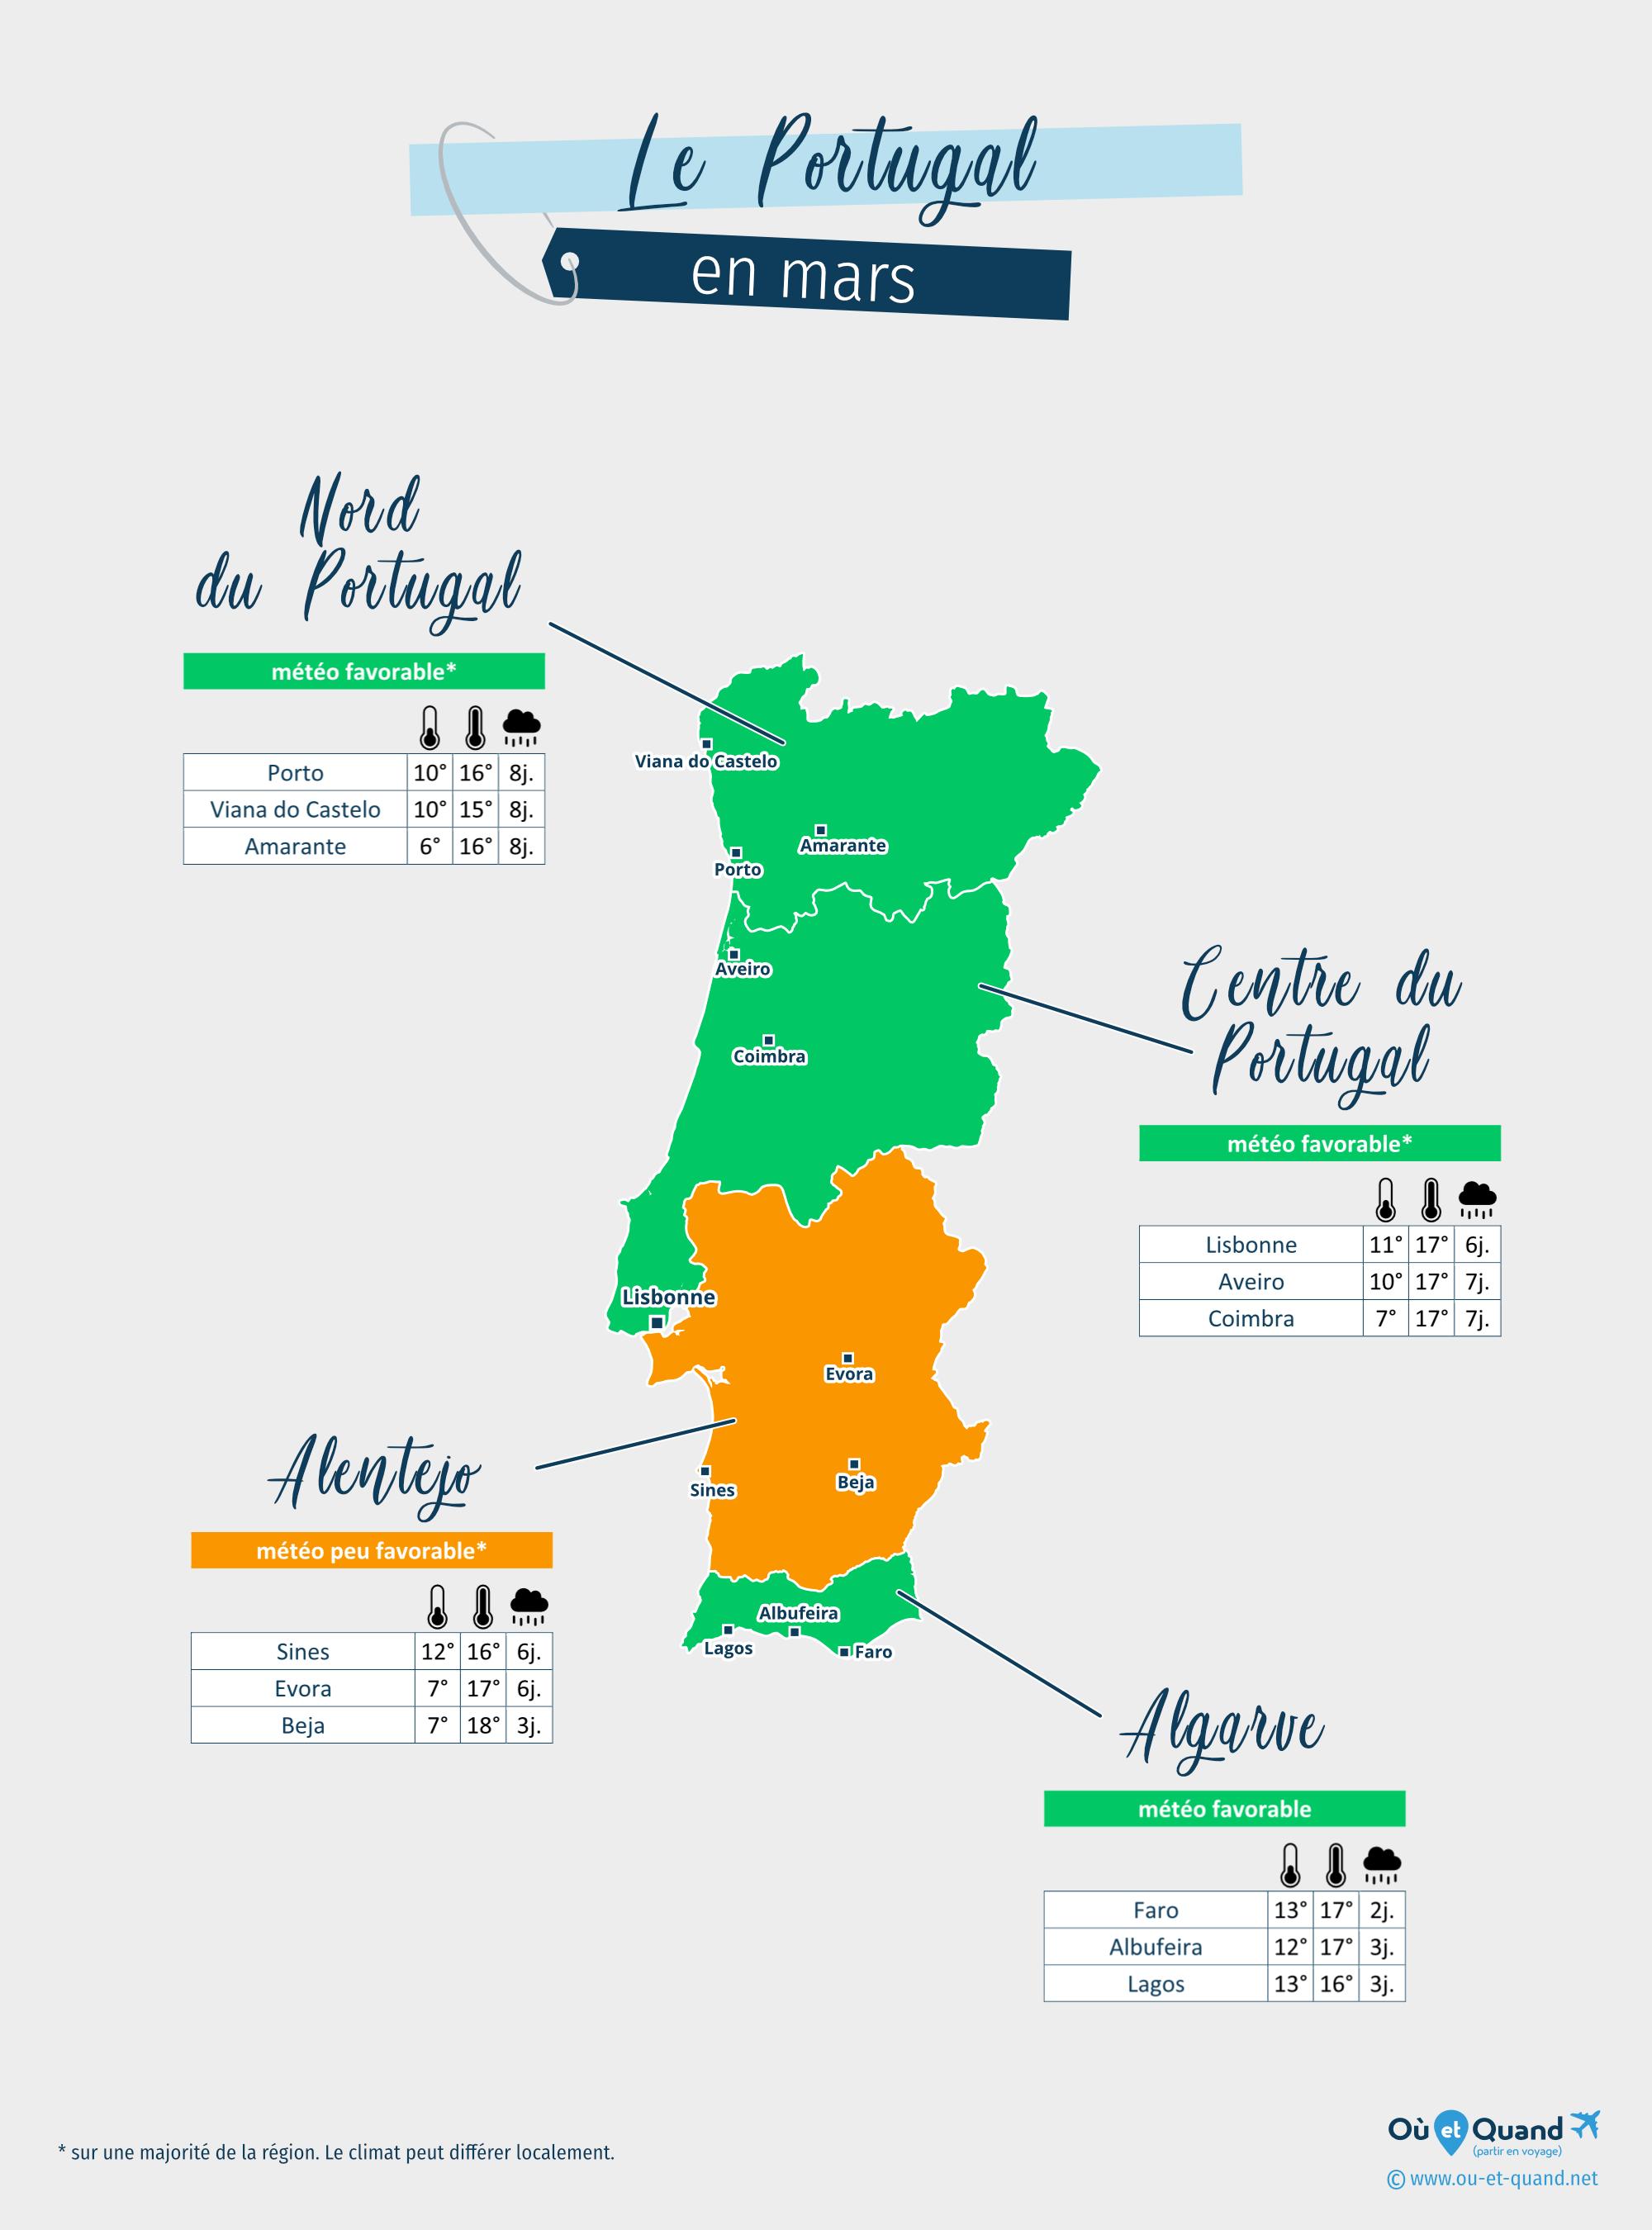 Carte de la météo en mars dans les régions du Portugal